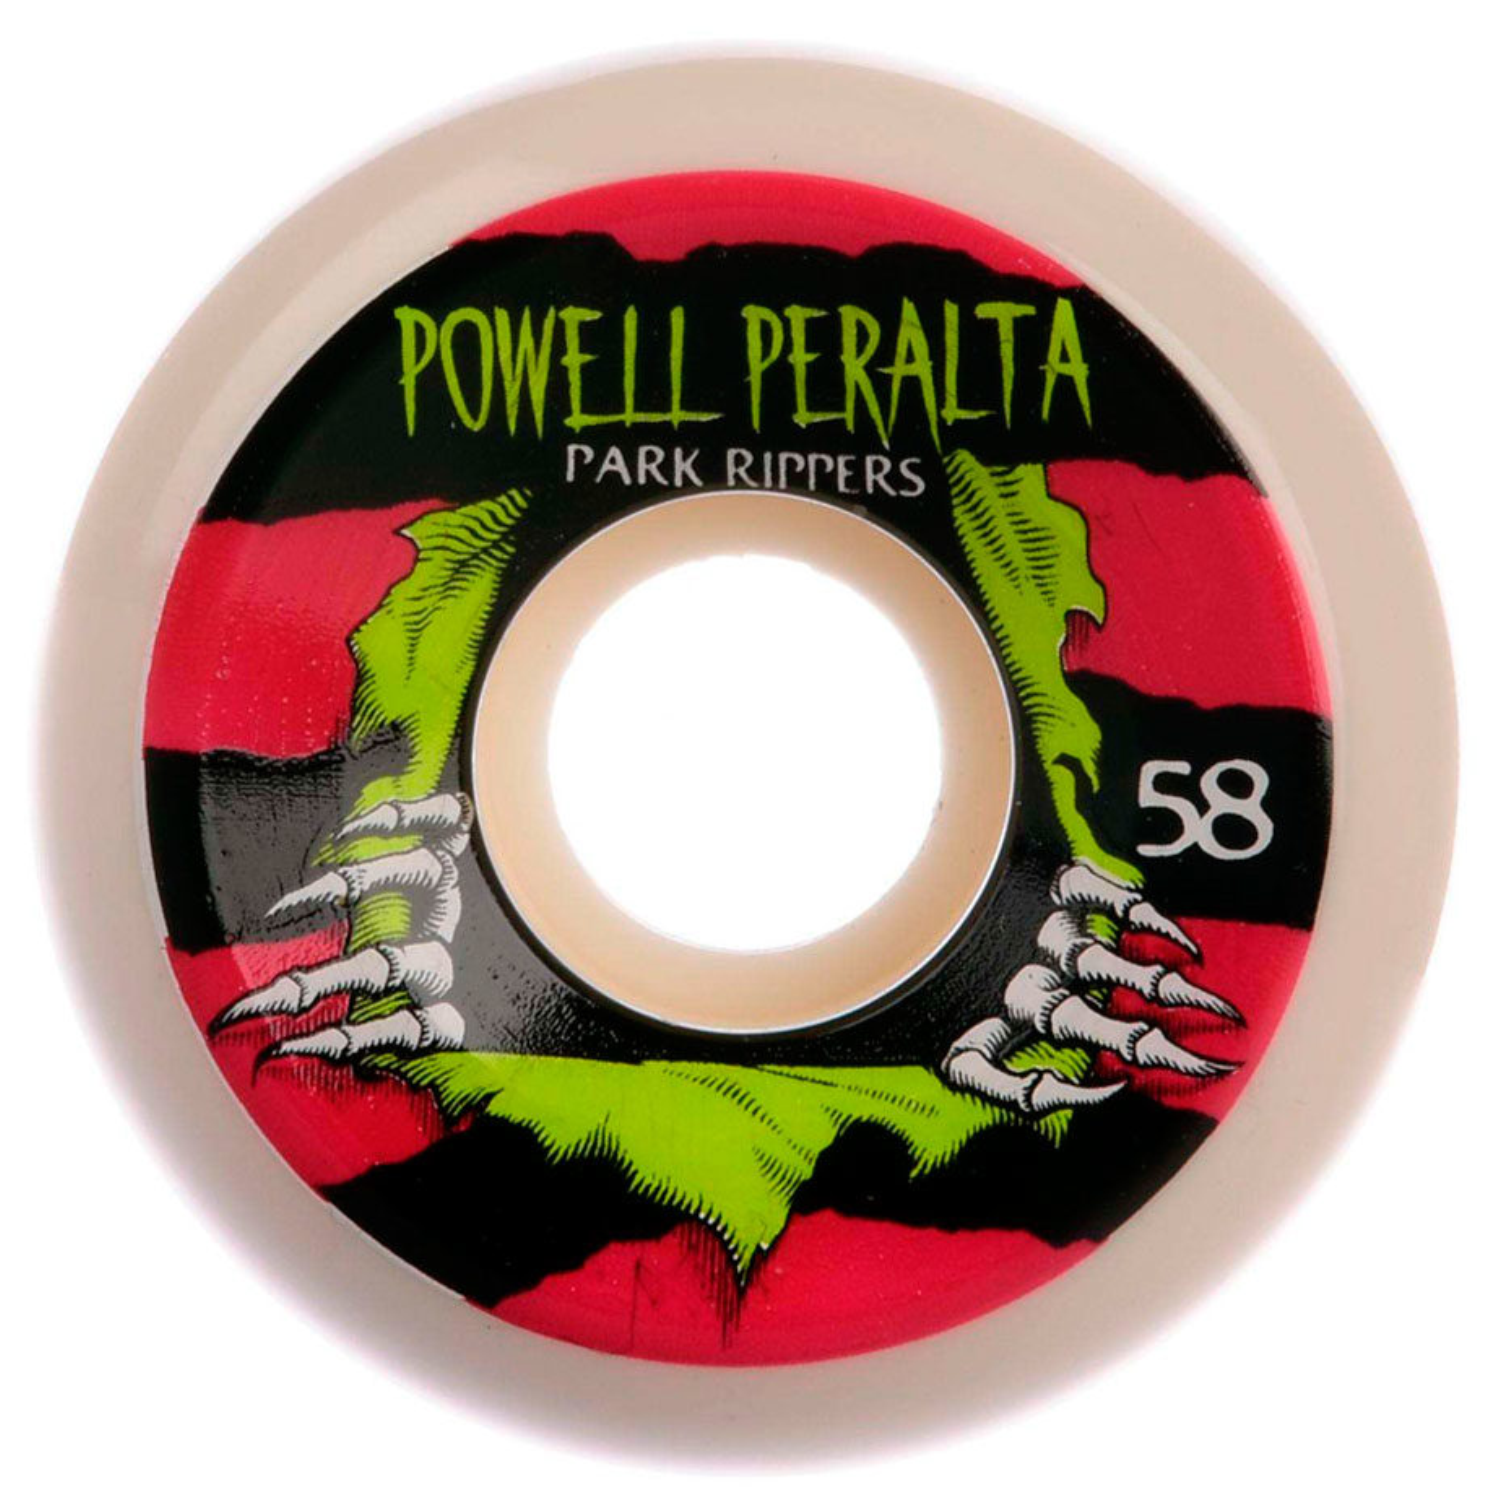 Llantas Powell Peralta Park Rippers 58mm